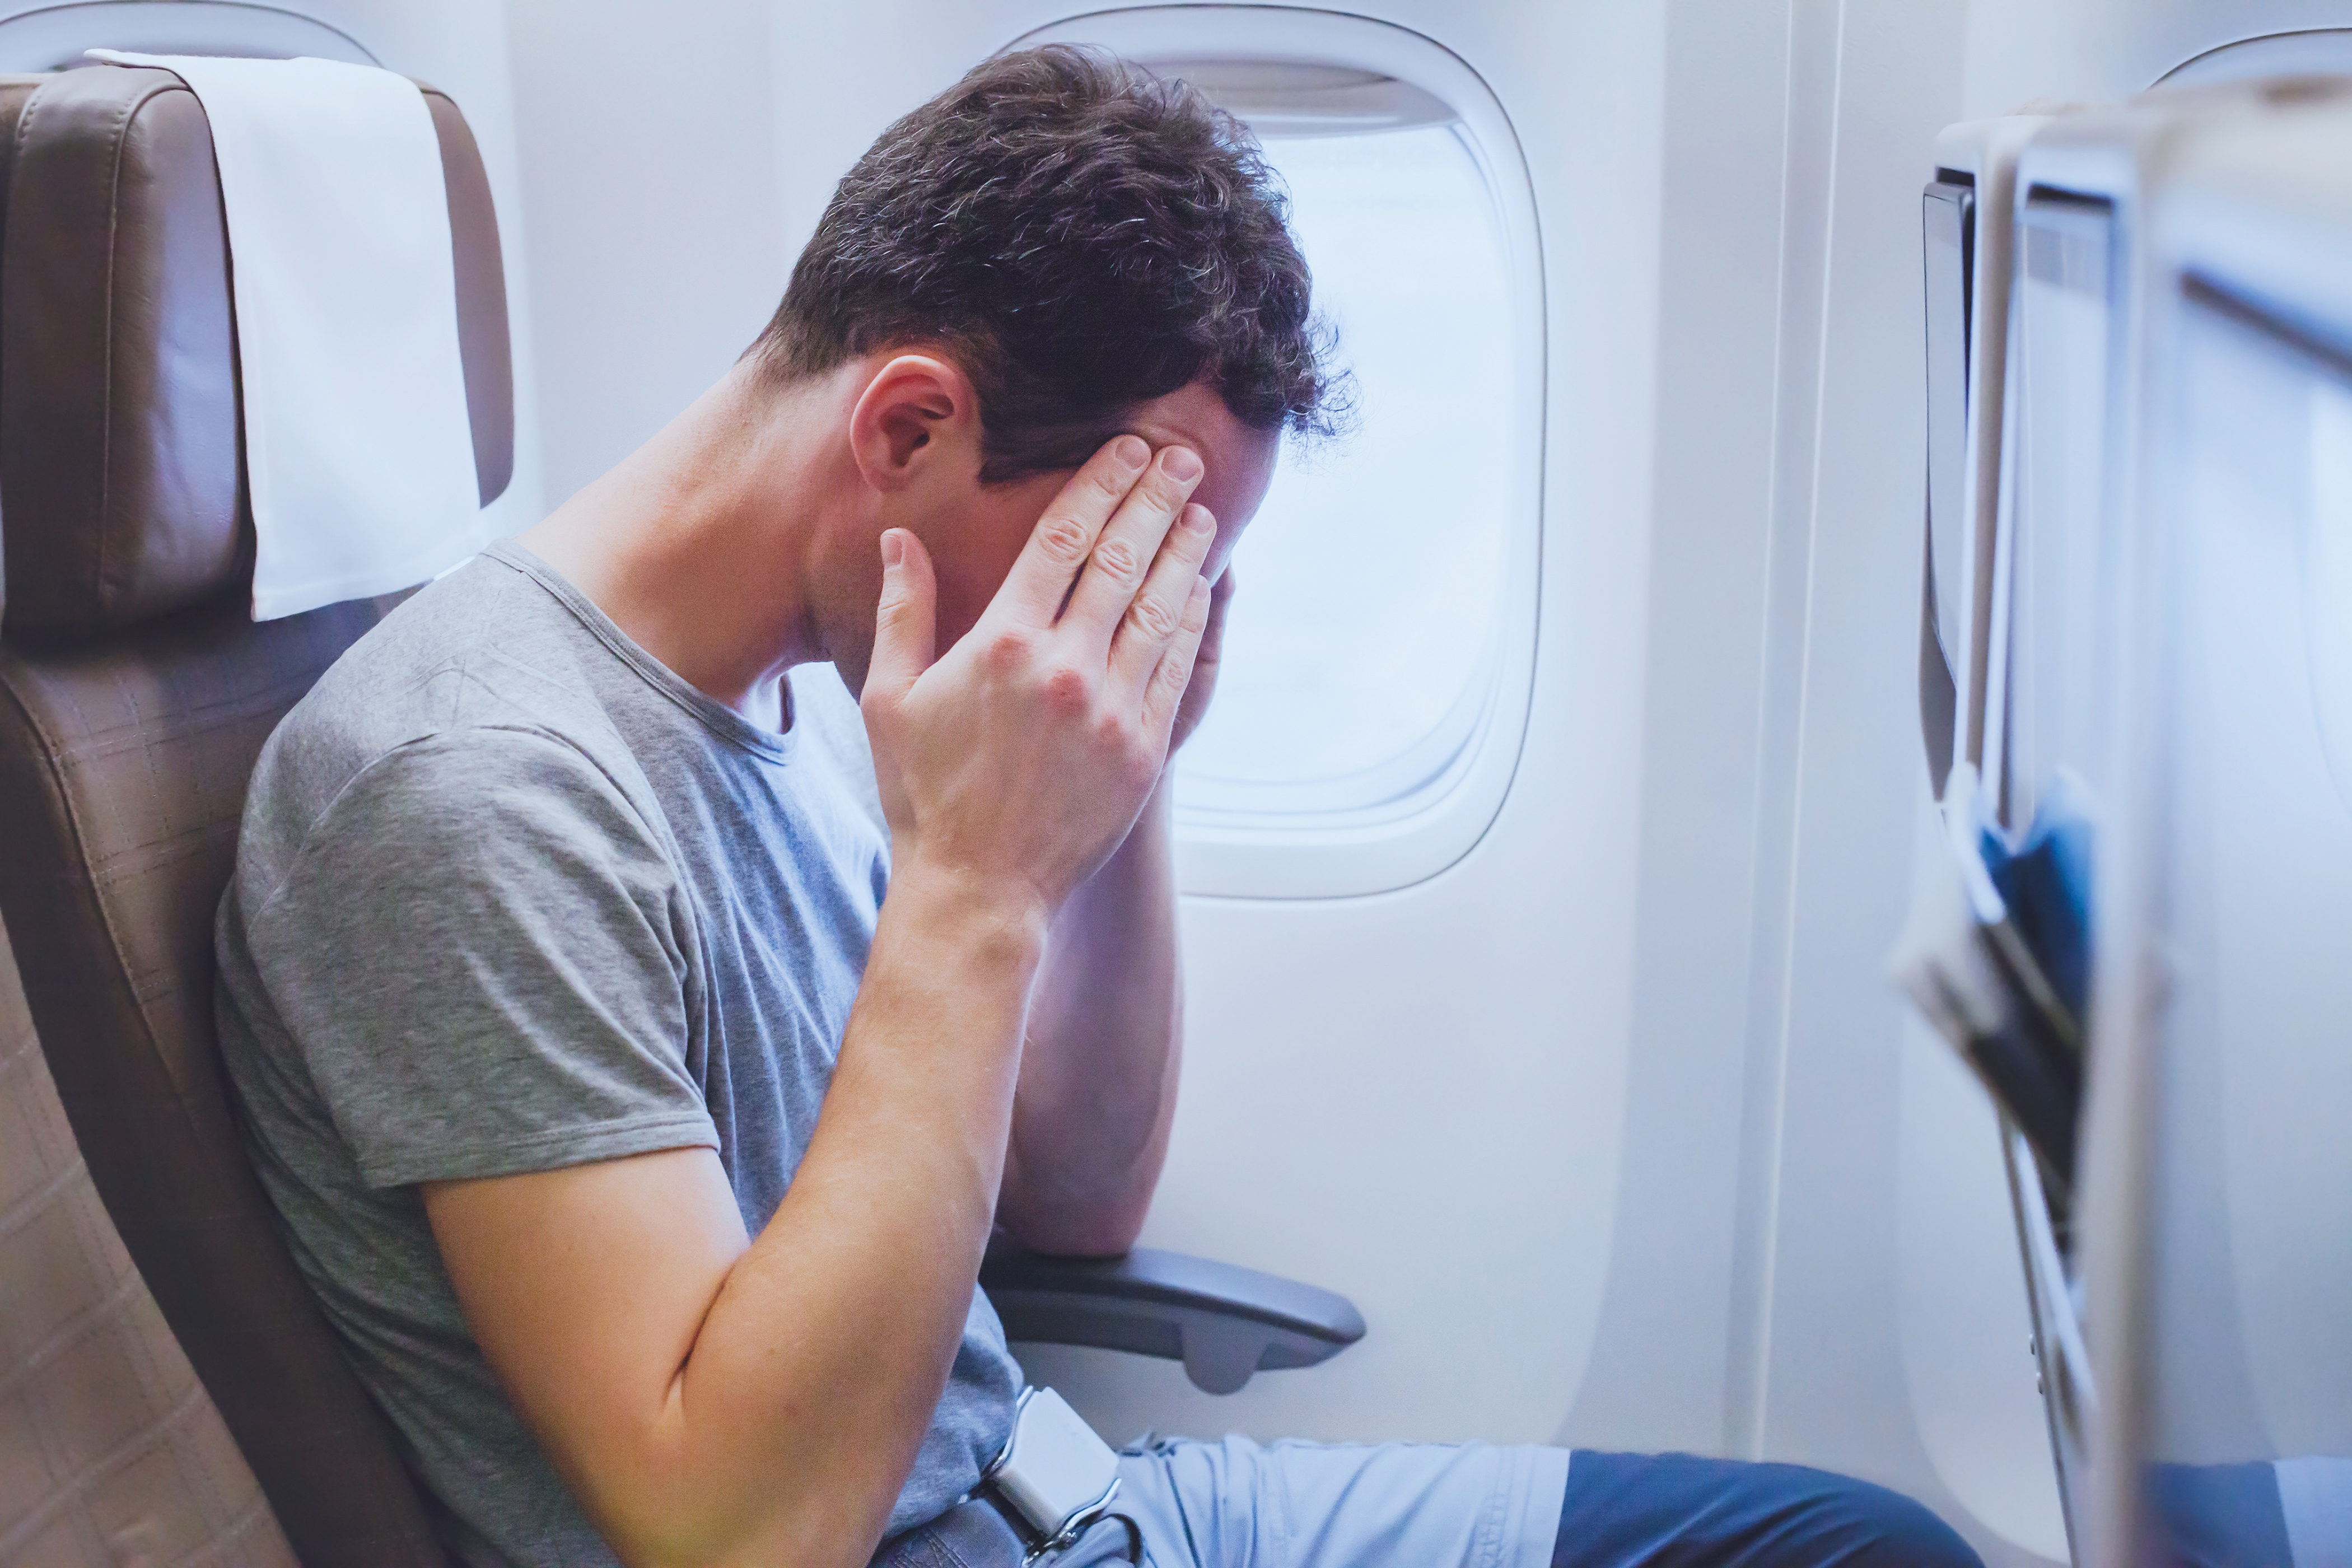 Der Flugzeugpassagier wurde im Internet wegen seines Verhaltens kritisiert "brutto" Und "ekelhaft"